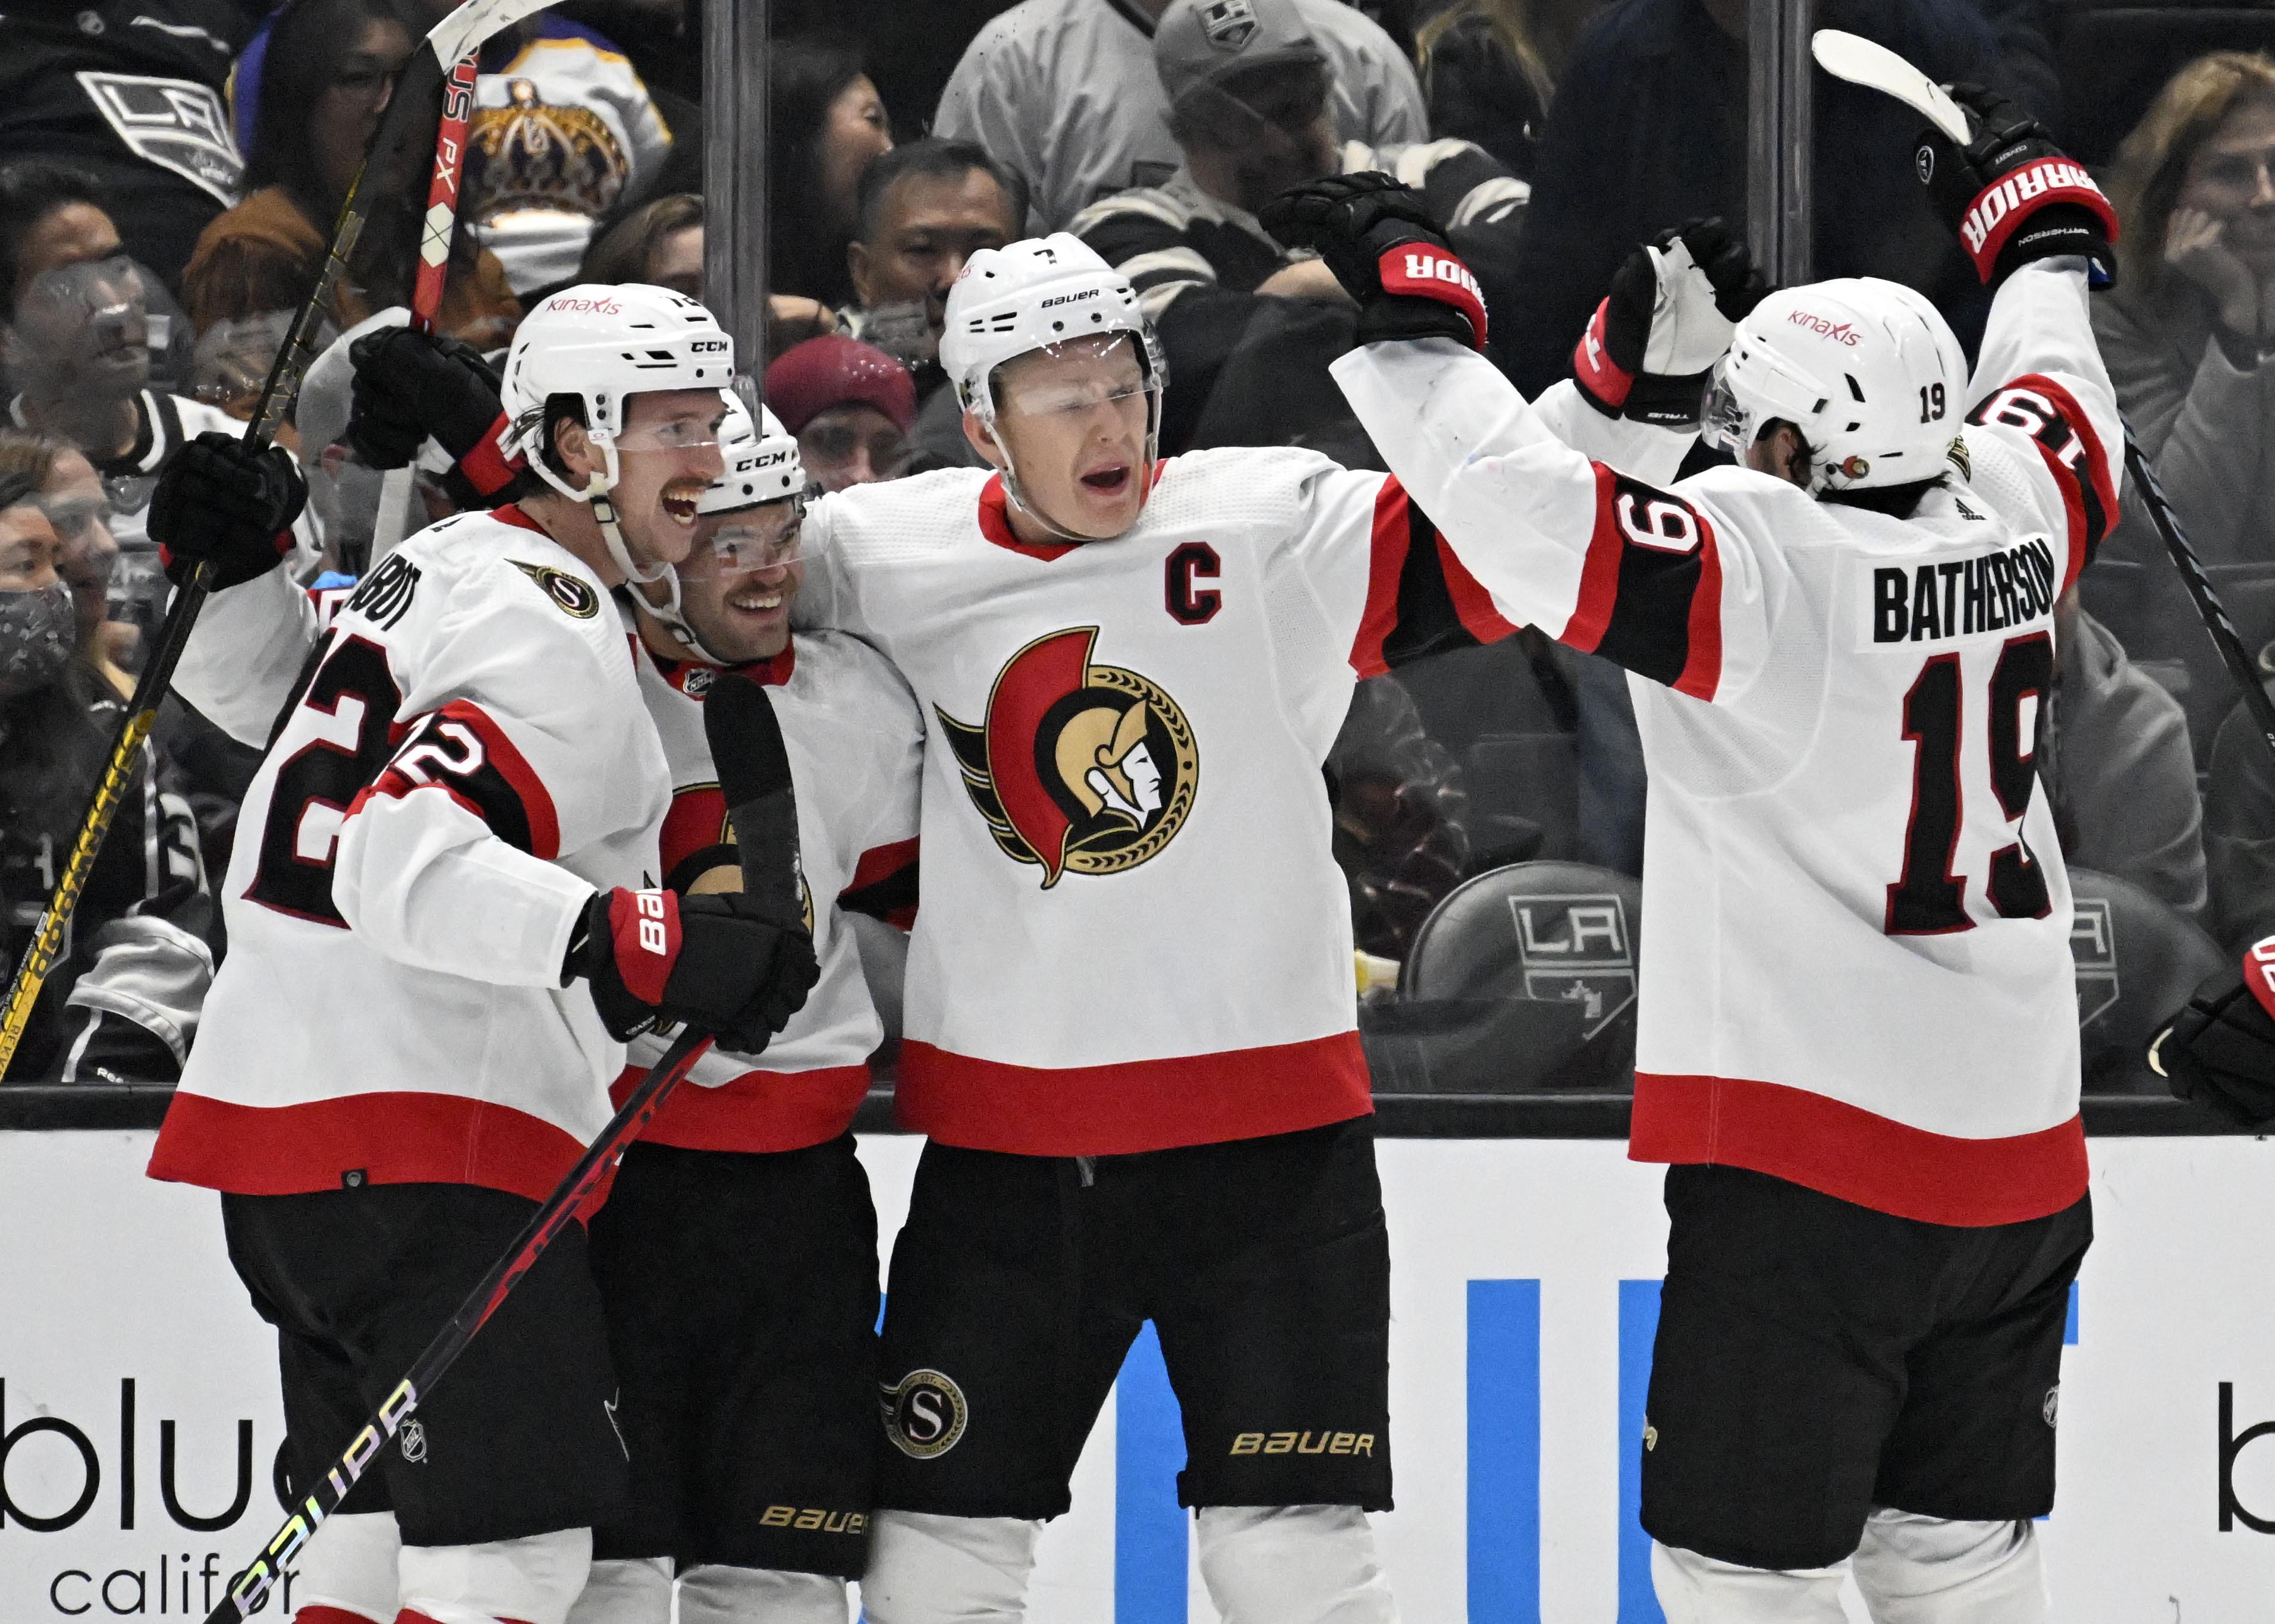 Claude Giroux scores on OT breakaway, Ottawa Senators beat Los